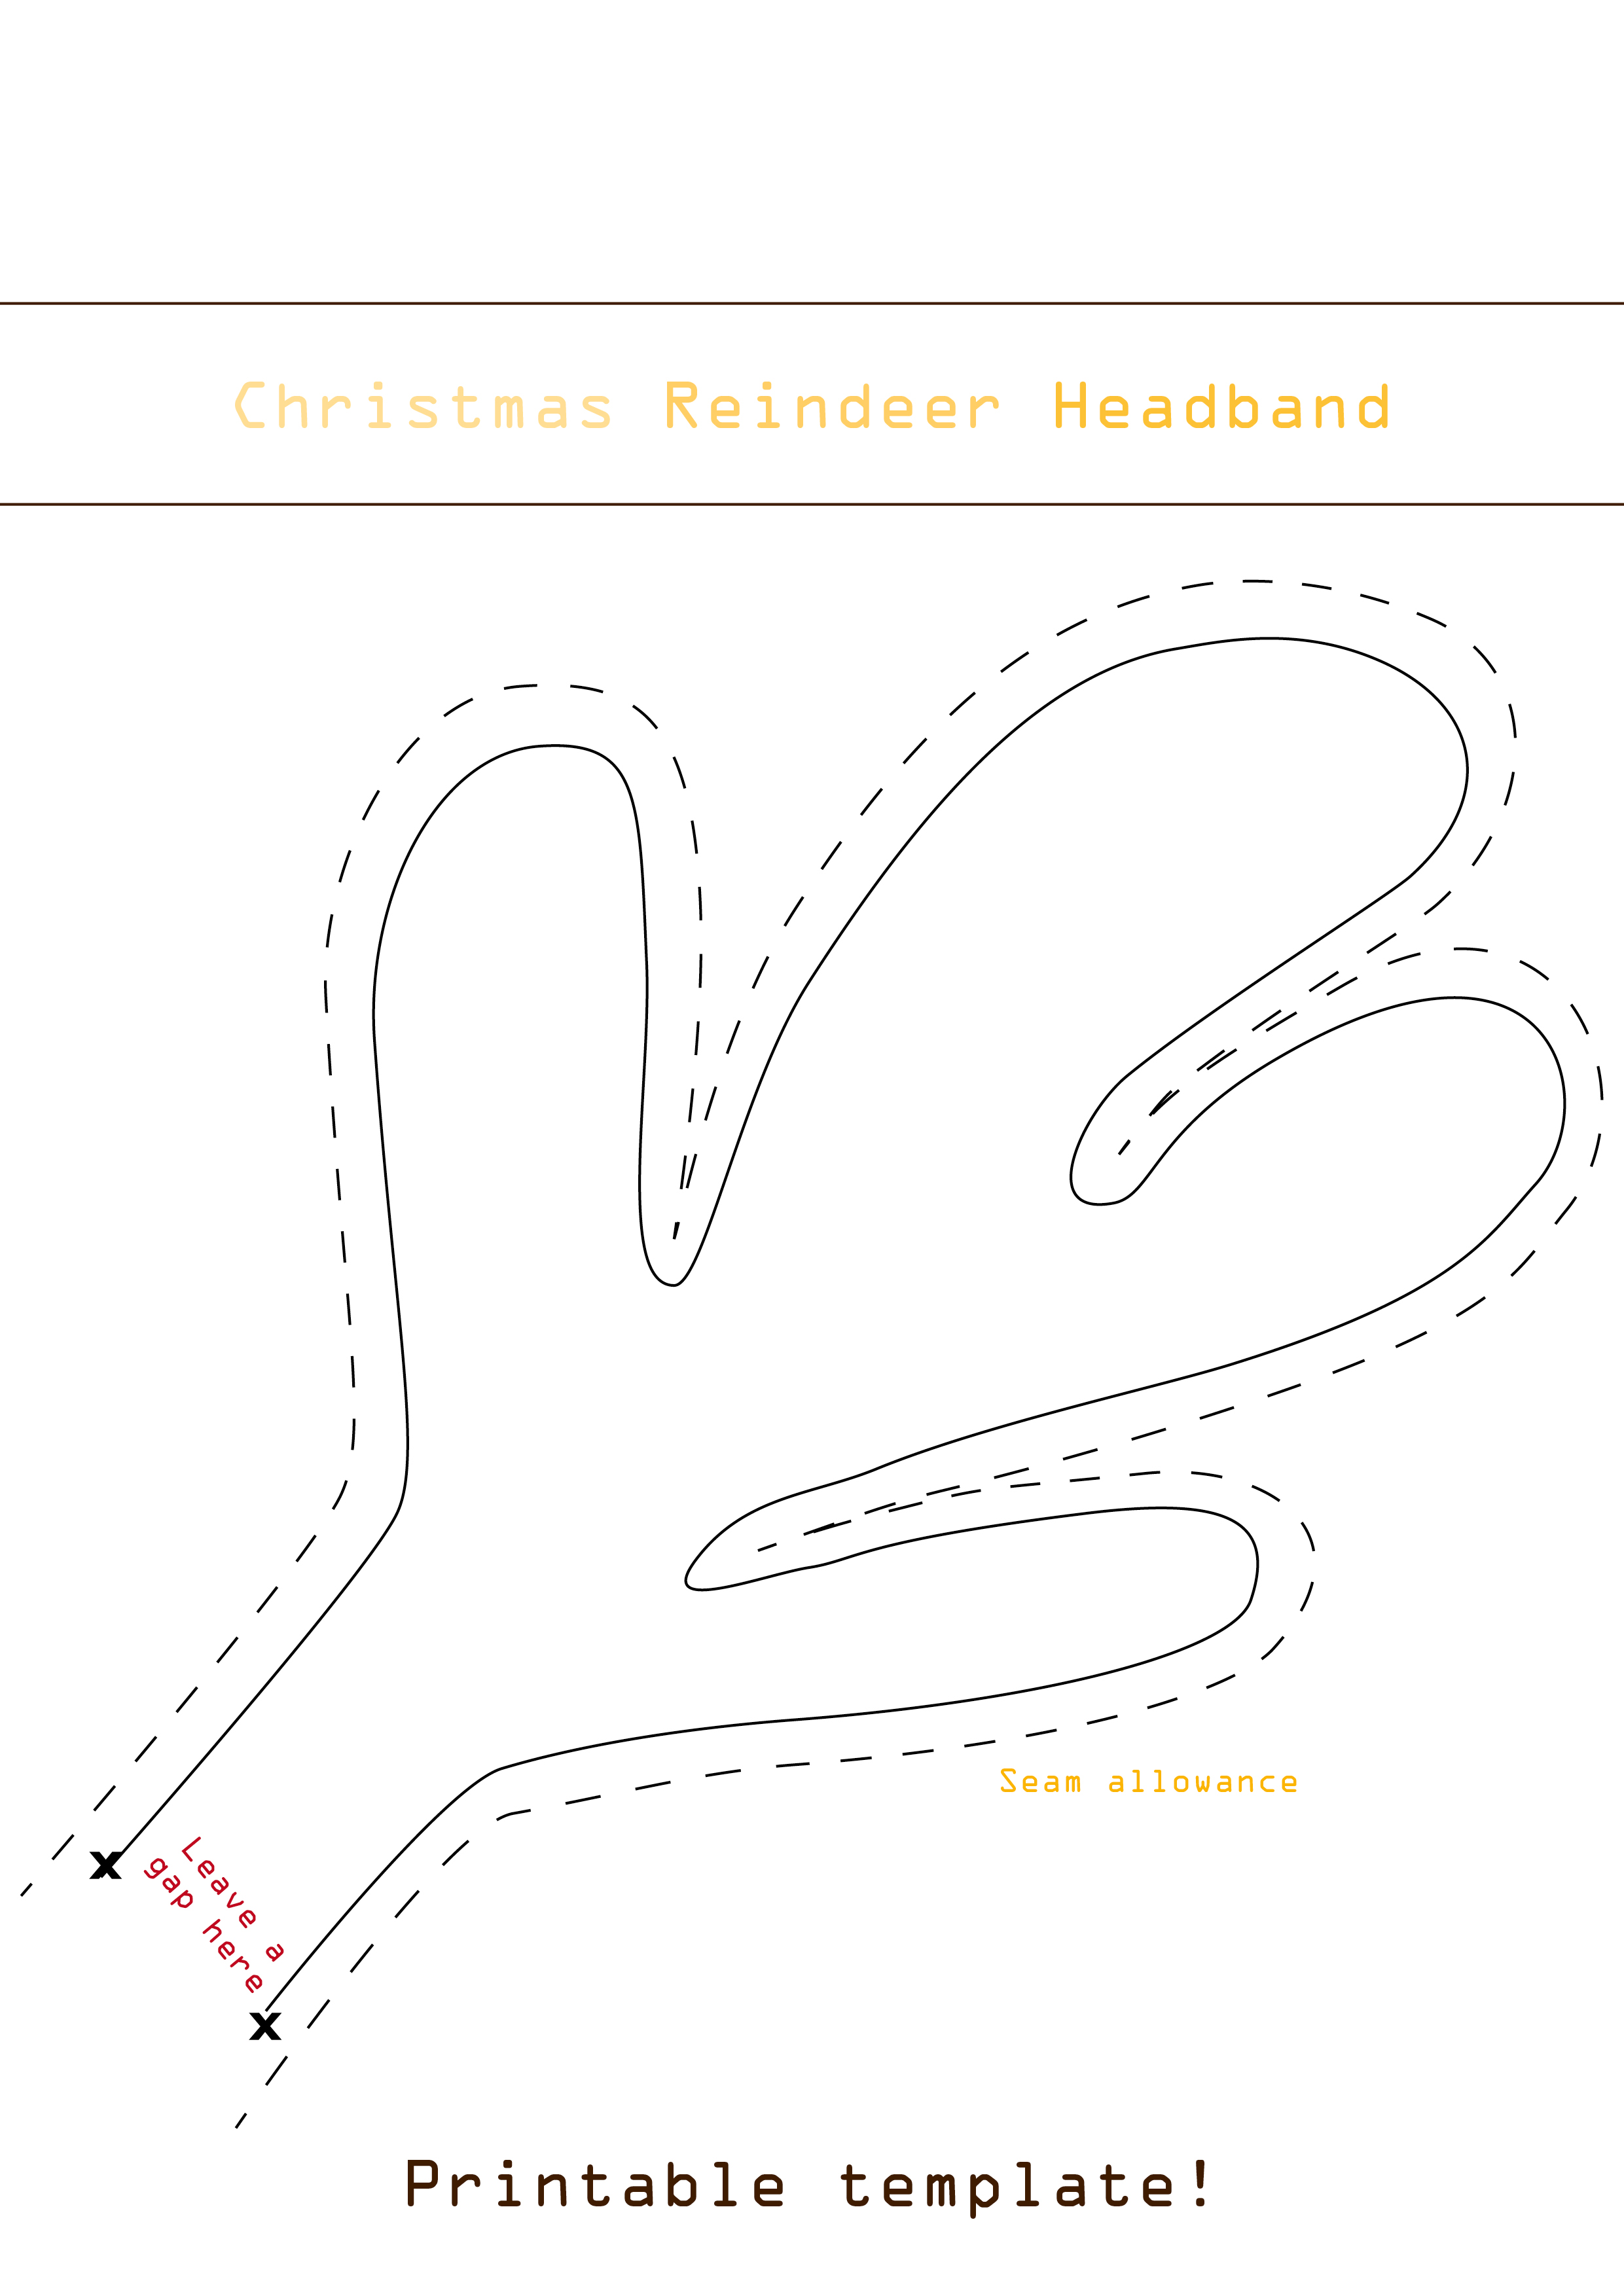 free-download-program-reindeer-antlers-template-brightfilecloud